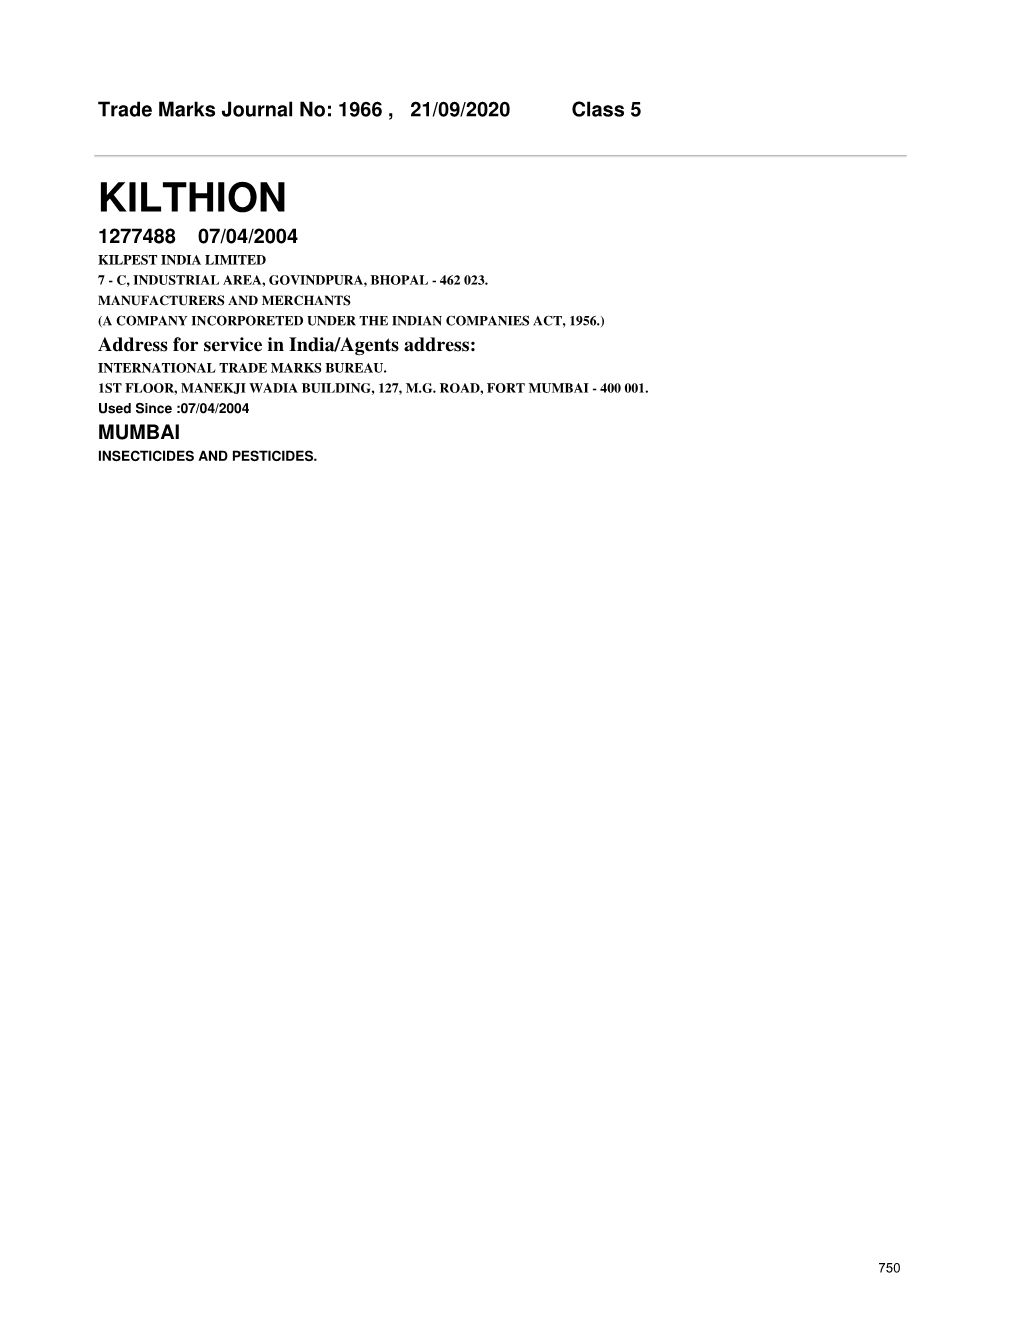 Kilthion 1277488 07/04/2004 Kilpest India Limited 7 - C, Industrial Area, Govindpura, Bhopal - 462 023